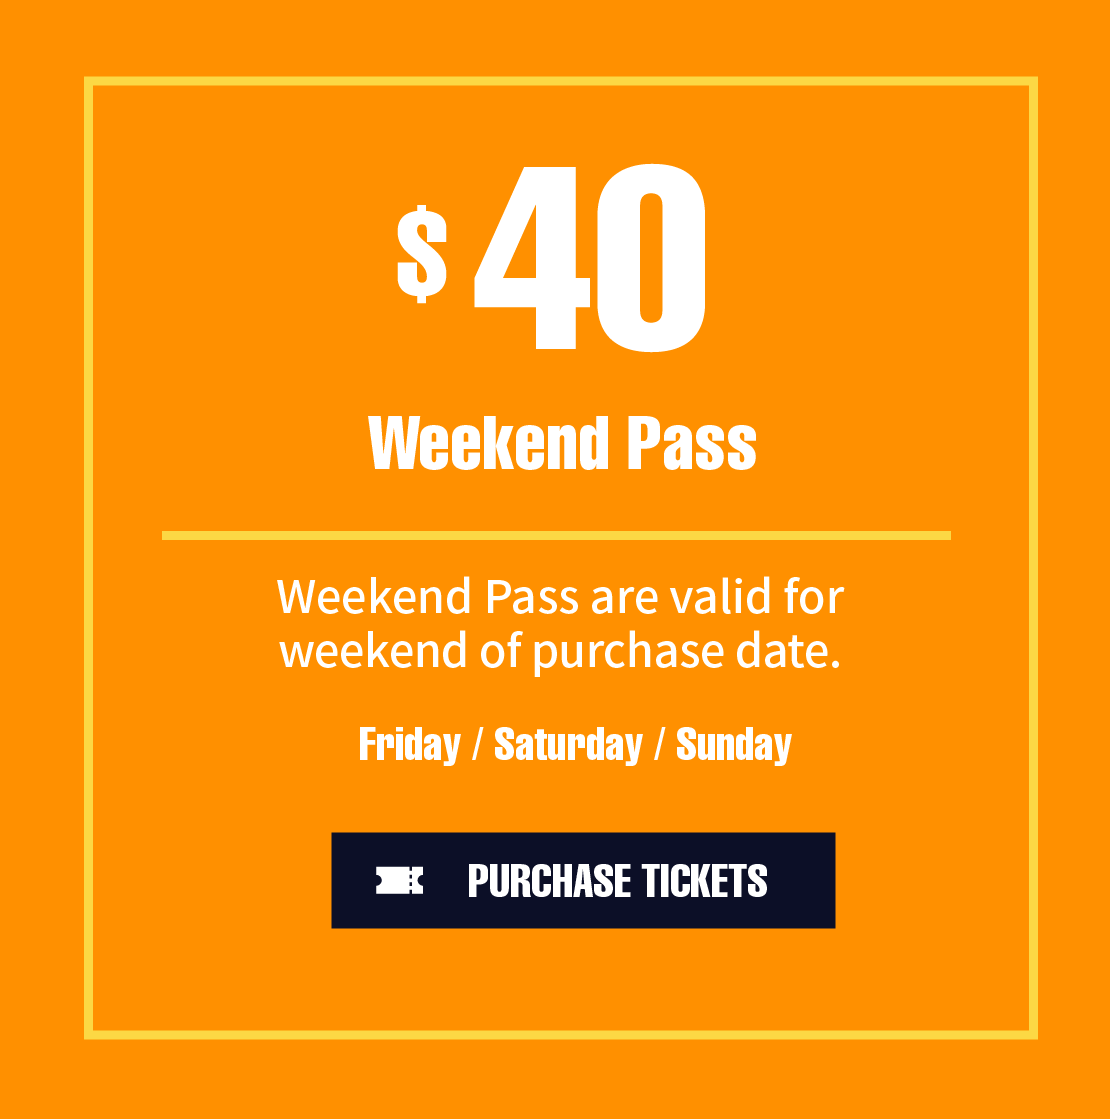 Weekend pass